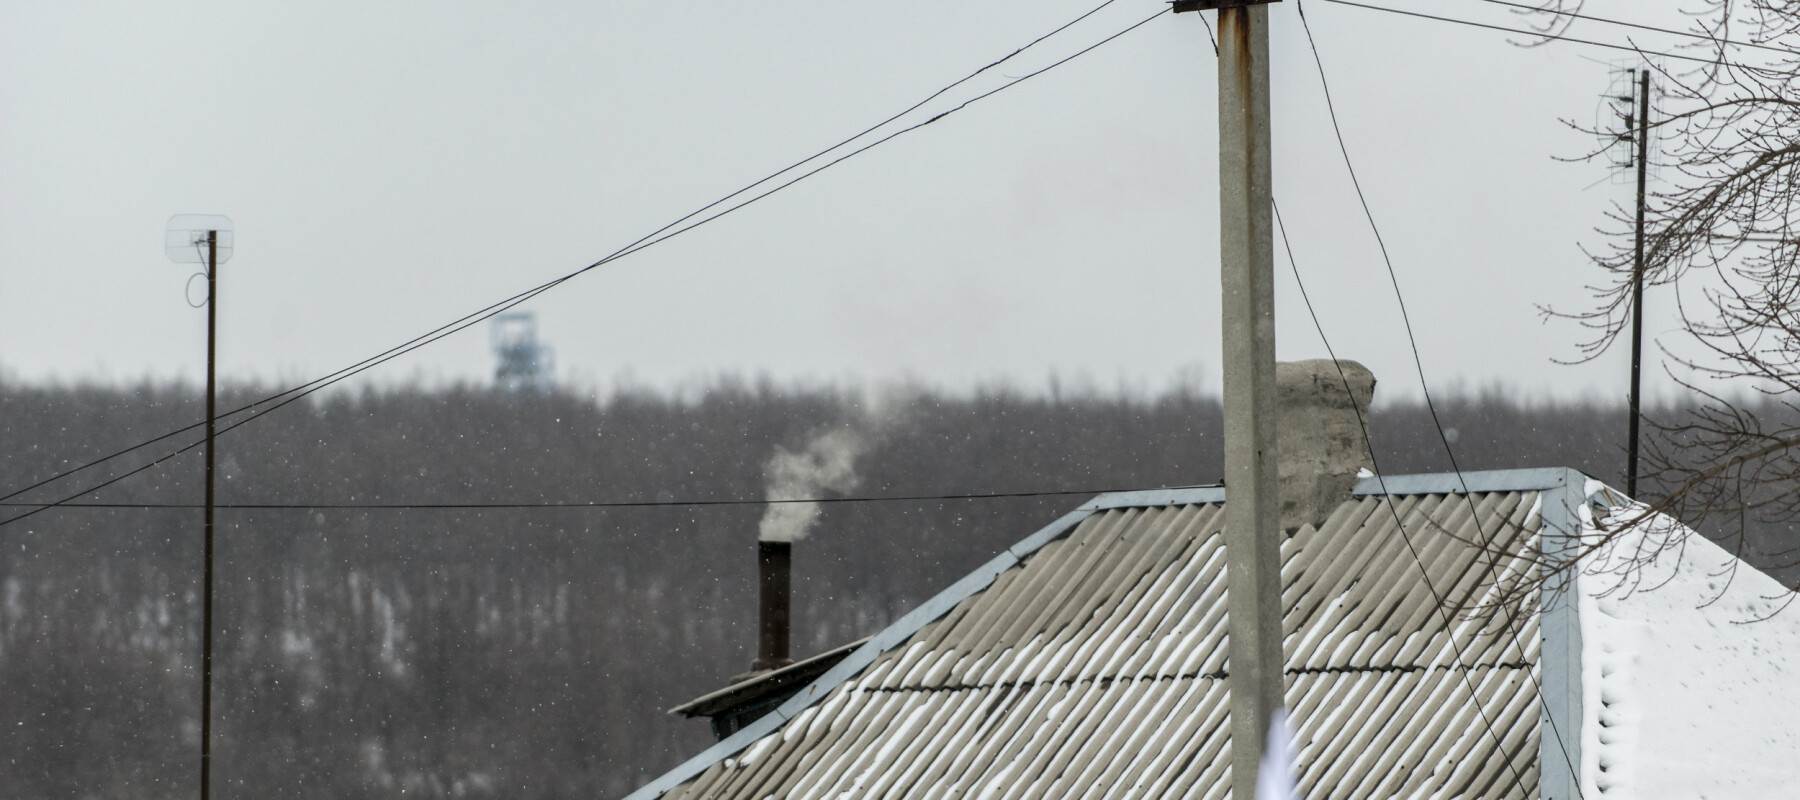 Østfronten. En norsk generalløytnant (Arne Bård Dalhaug) passer på våpenhvilen i Øst-Ukraina. Den brytes hver dag. Organisasjonen for sikkerhet og samarbeid i Europa (OSSE) har 700 observatører i Øst-Ukraina – på begge sider av frontlinja. 20 er norske.